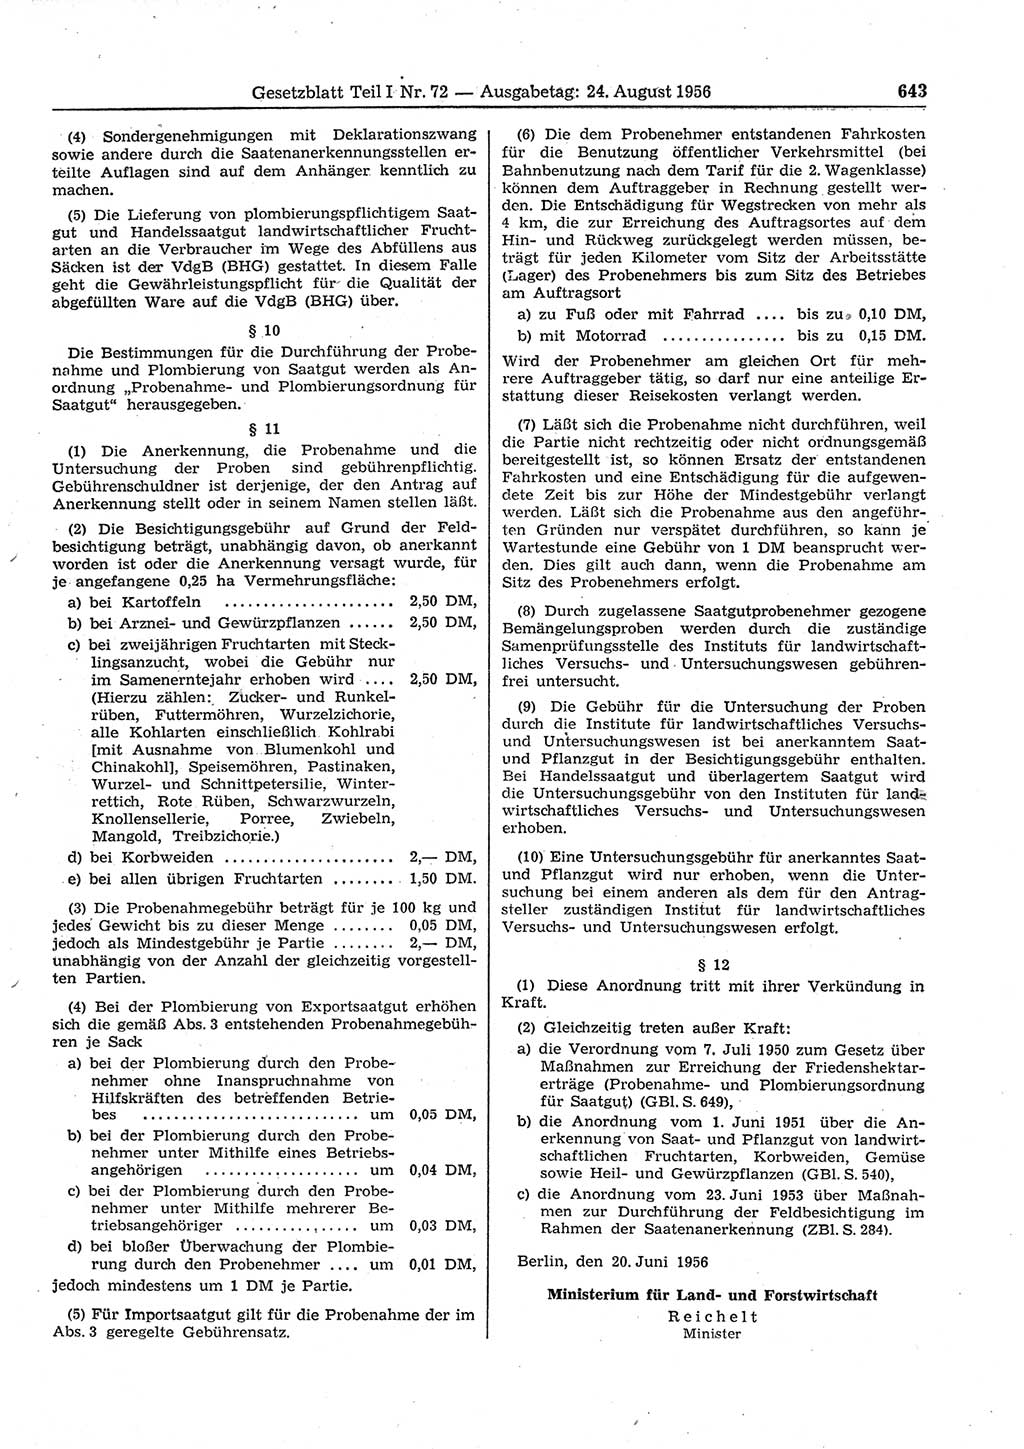 Gesetzblatt (GBl.) der Deutschen Demokratischen Republik (DDR) Teil Ⅰ 1956, Seite 643 (GBl. DDR Ⅰ 1956, S. 643)